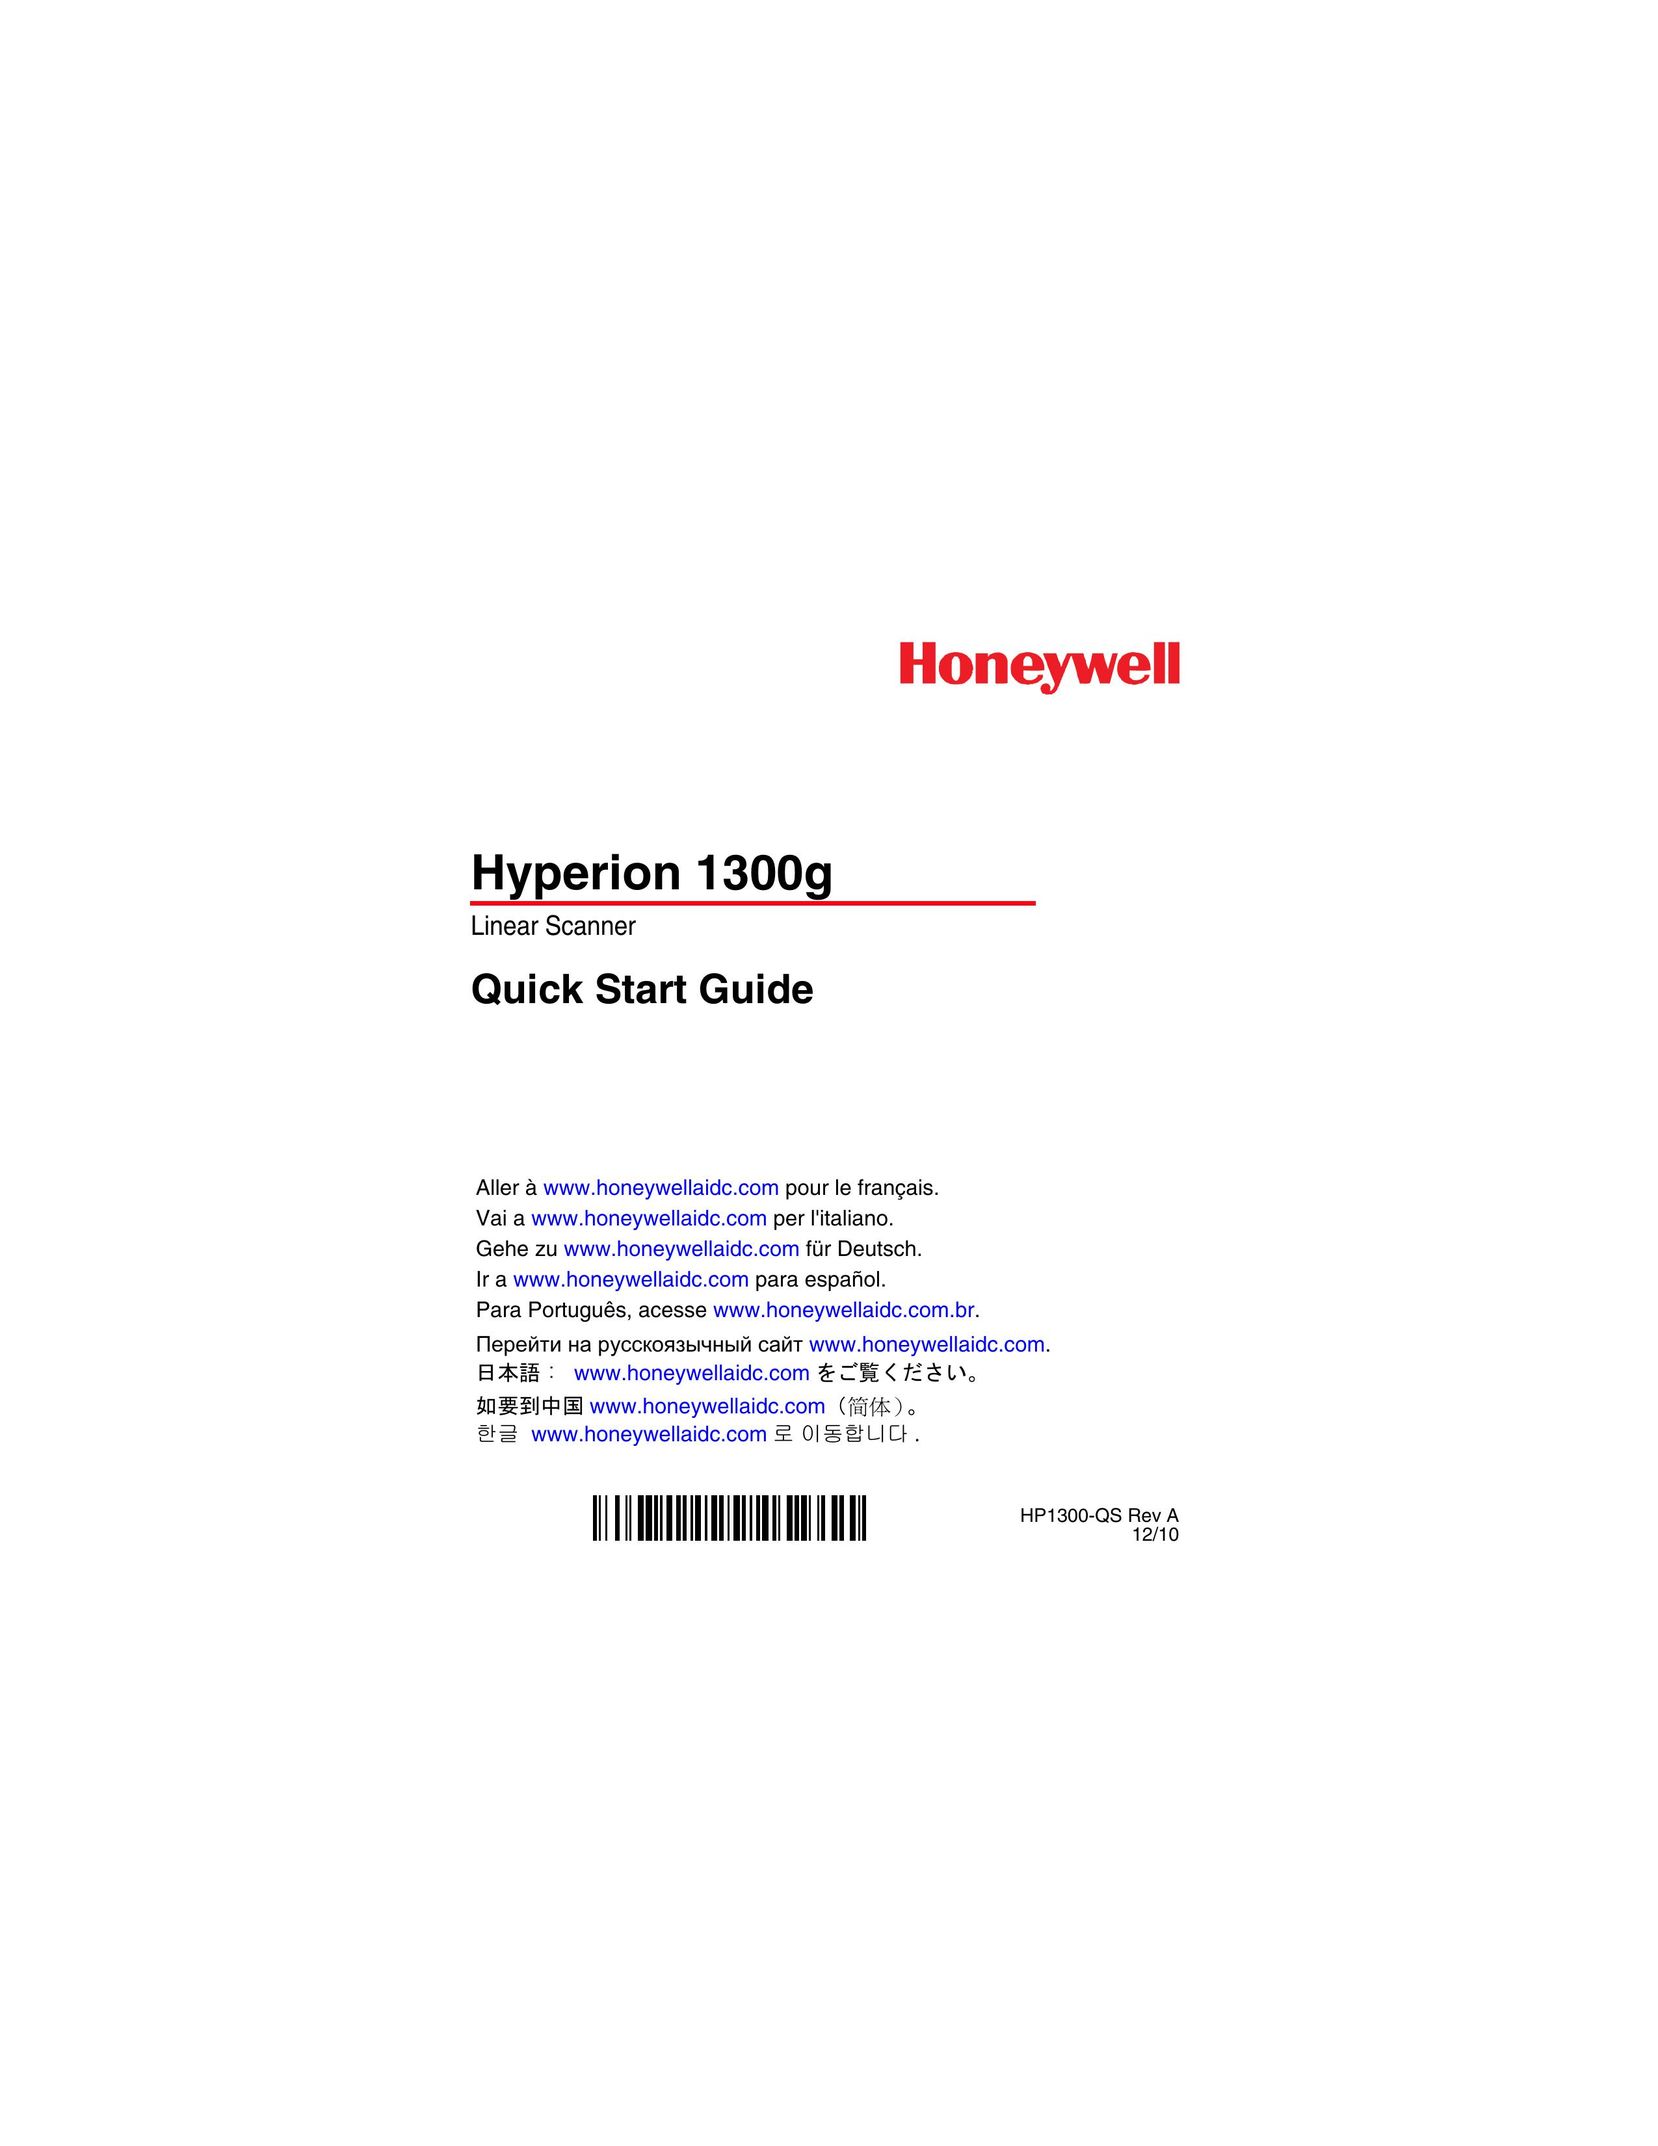 Honeywell Hyperion 1300 g Scanner User Manual